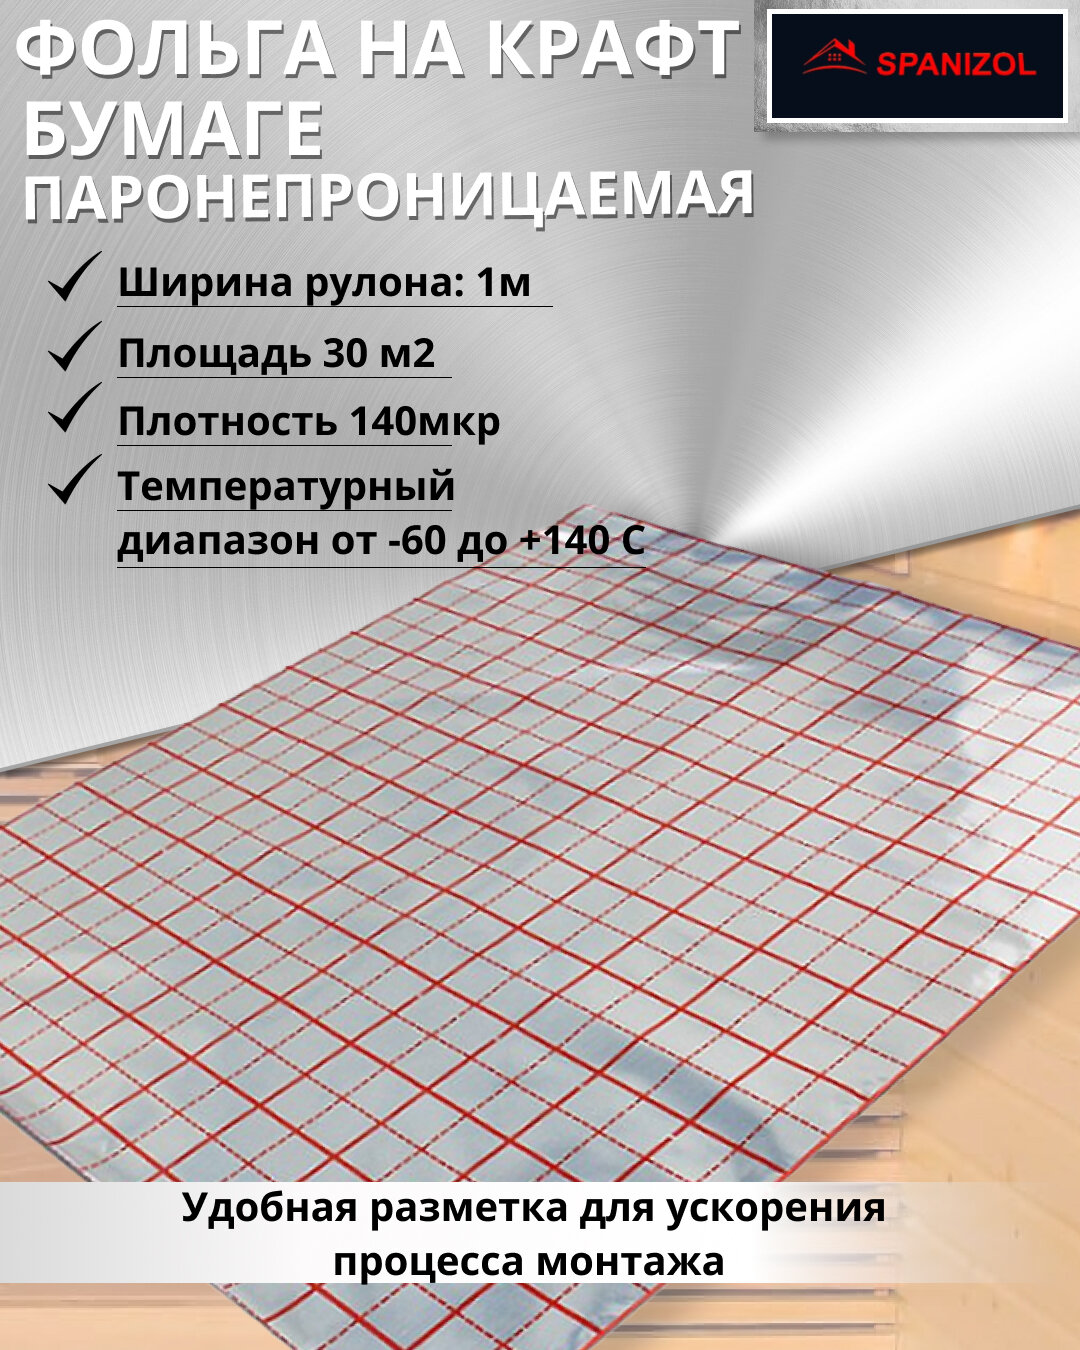 Алюминевая фольга на крафт бумаге пароизоляционная для бани и сауны, парных, фольга алюминевая 140 мкр, Spanizol LB 30м2